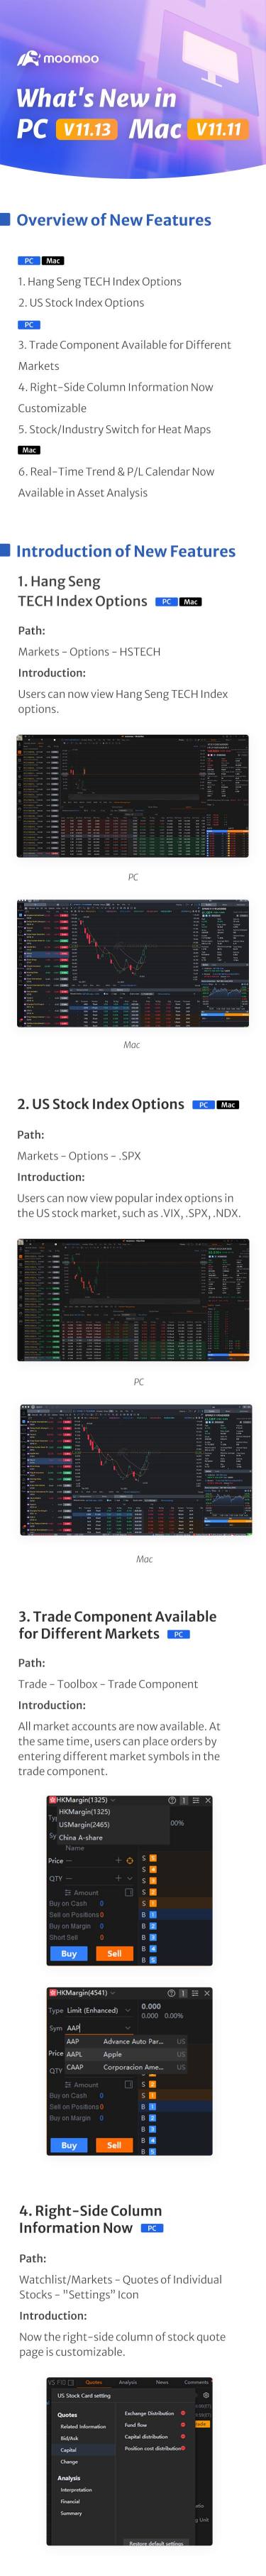 新增功能：美國股票指數期權現在可在 PC 版 11.13 和 Mac 版 11.11 中查看